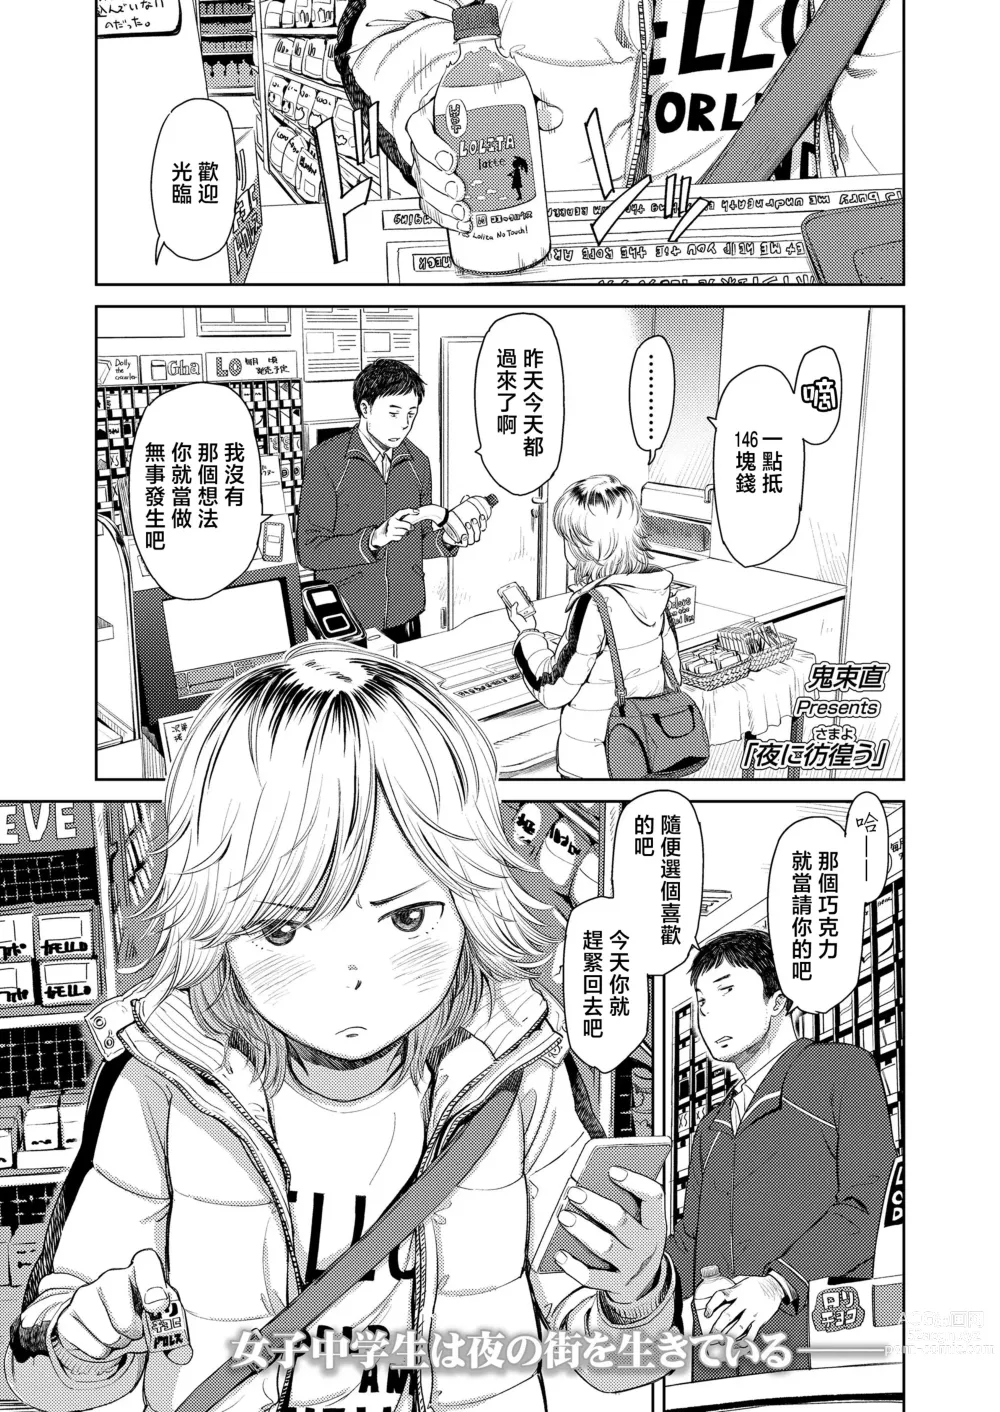 Page 1 of manga Yoru ni Houkou